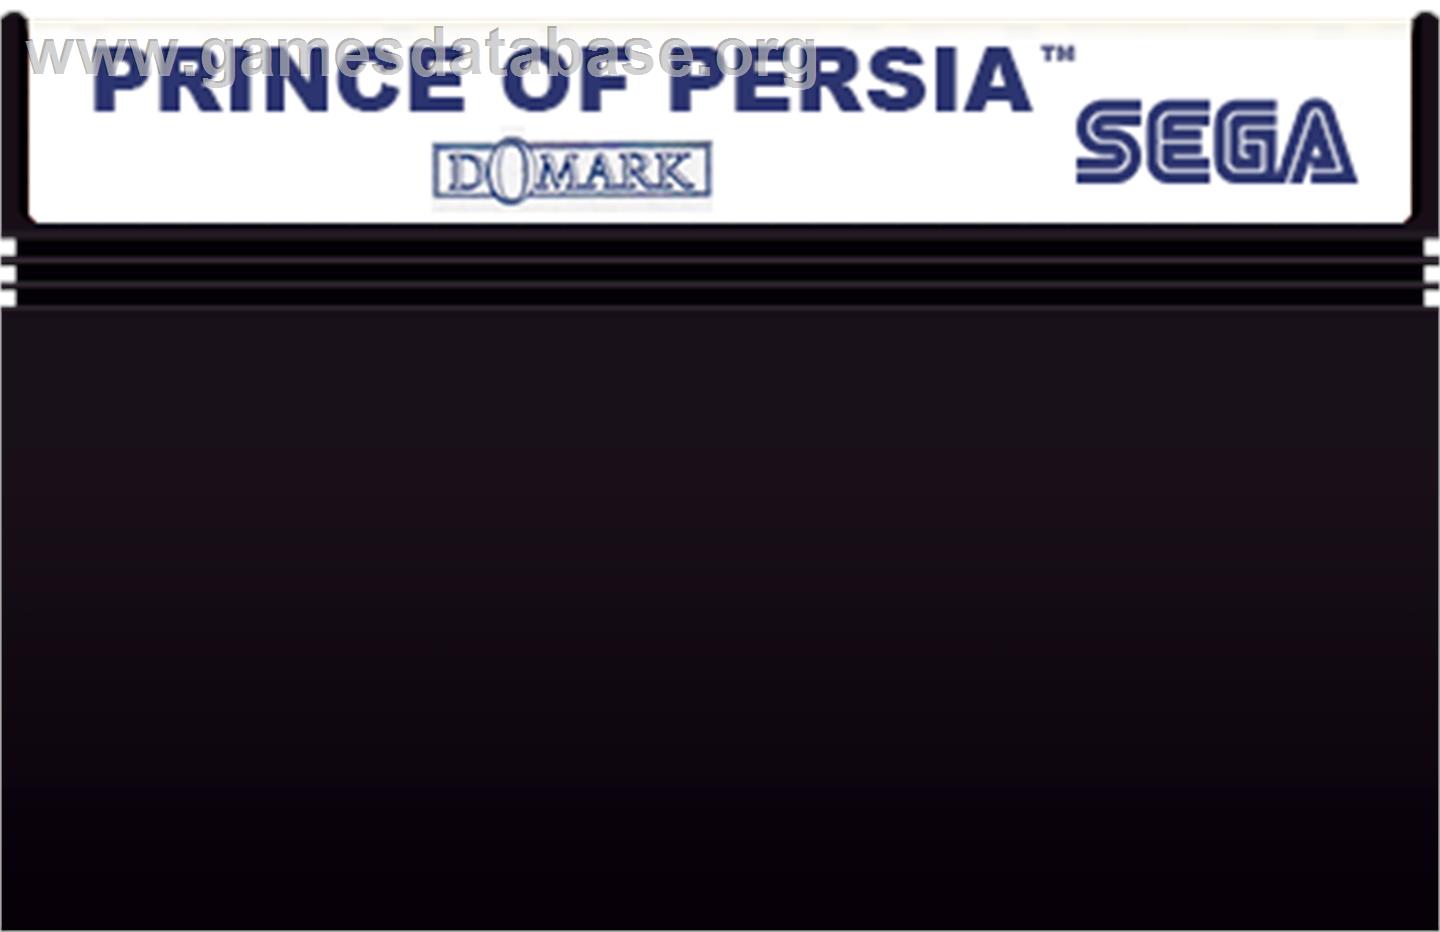 Prince of Persia - Sega Master System - Artwork - Cartridge